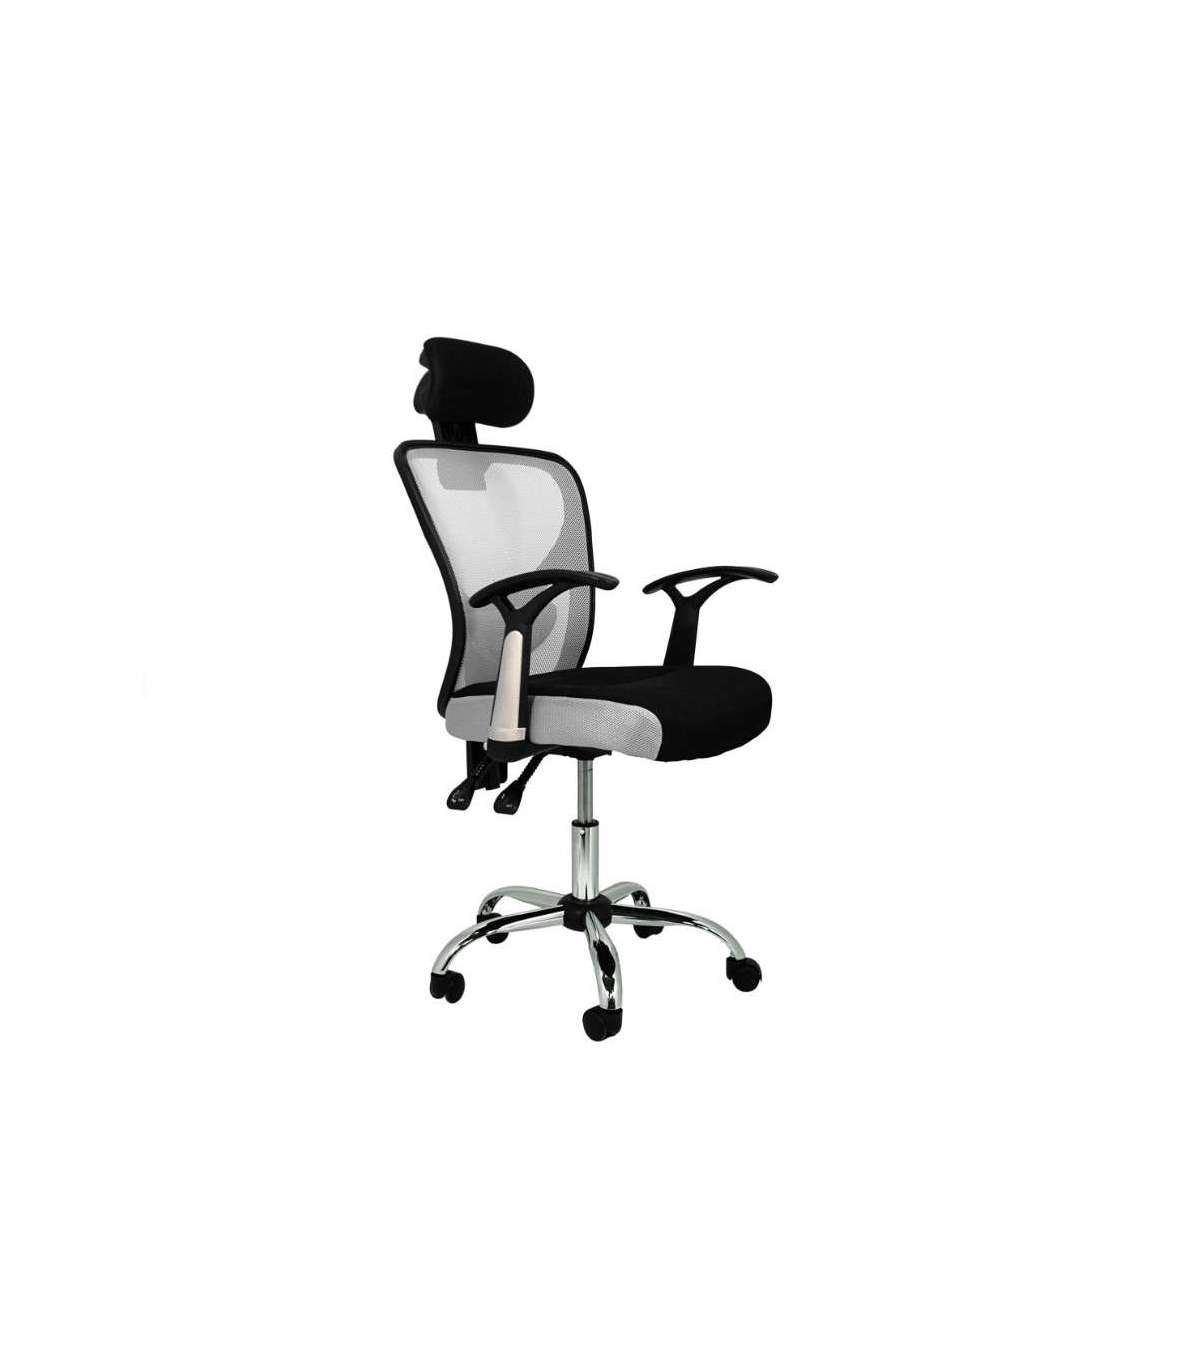 Silla de escritorio plegable para dormitorios de espacios pequeños, sillas  de escritorio plegables con asientos y ruedas acolchados, sillas de oficina